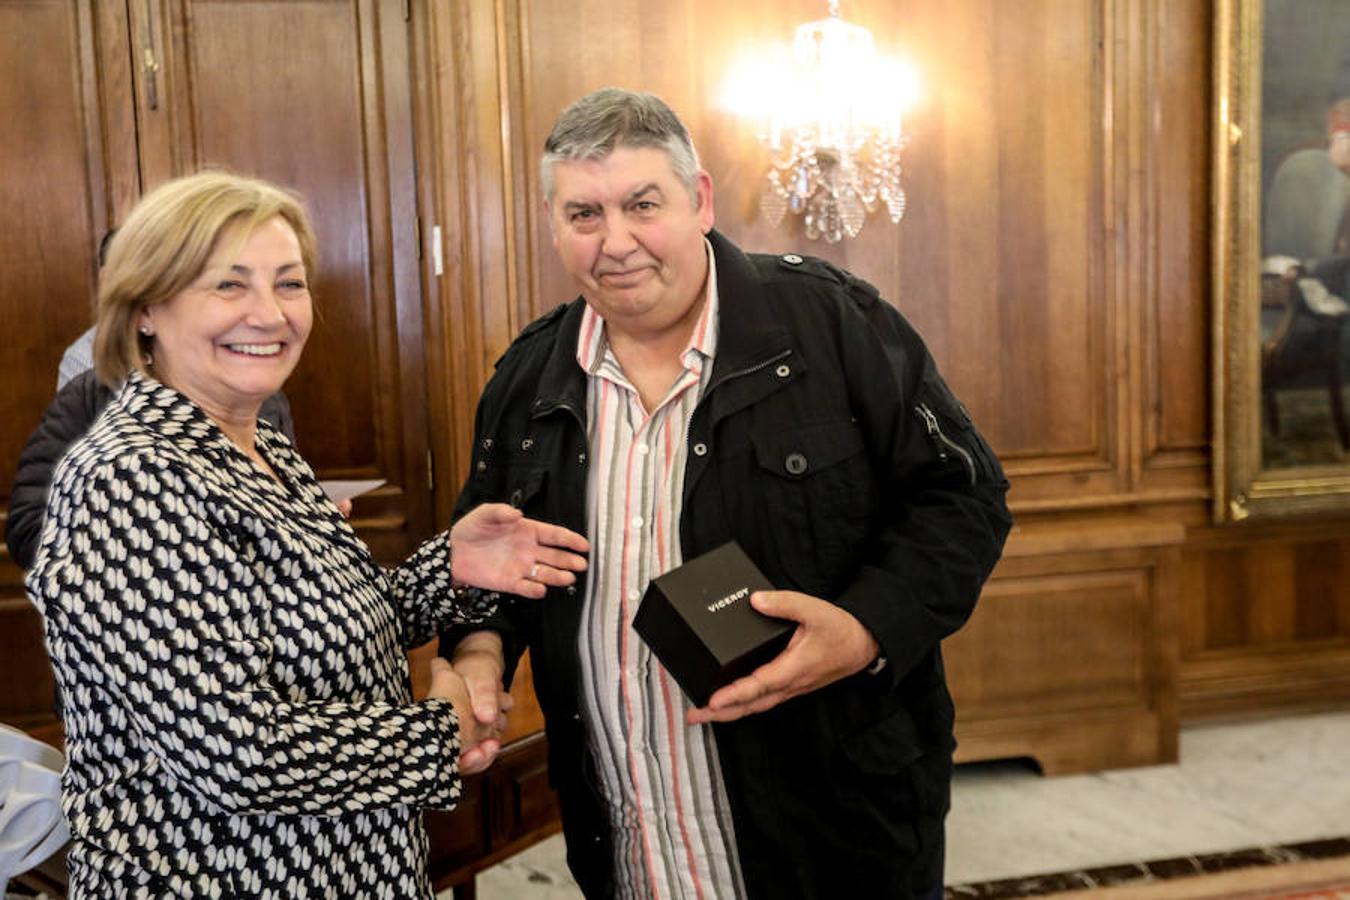 Juan Ramón Mata saluda a la alcaldesa en su despedida oficial del Ayuntamiento, donde se incorporó en 1985, como especialista de oficios varios en la sección de Mantenimiento.